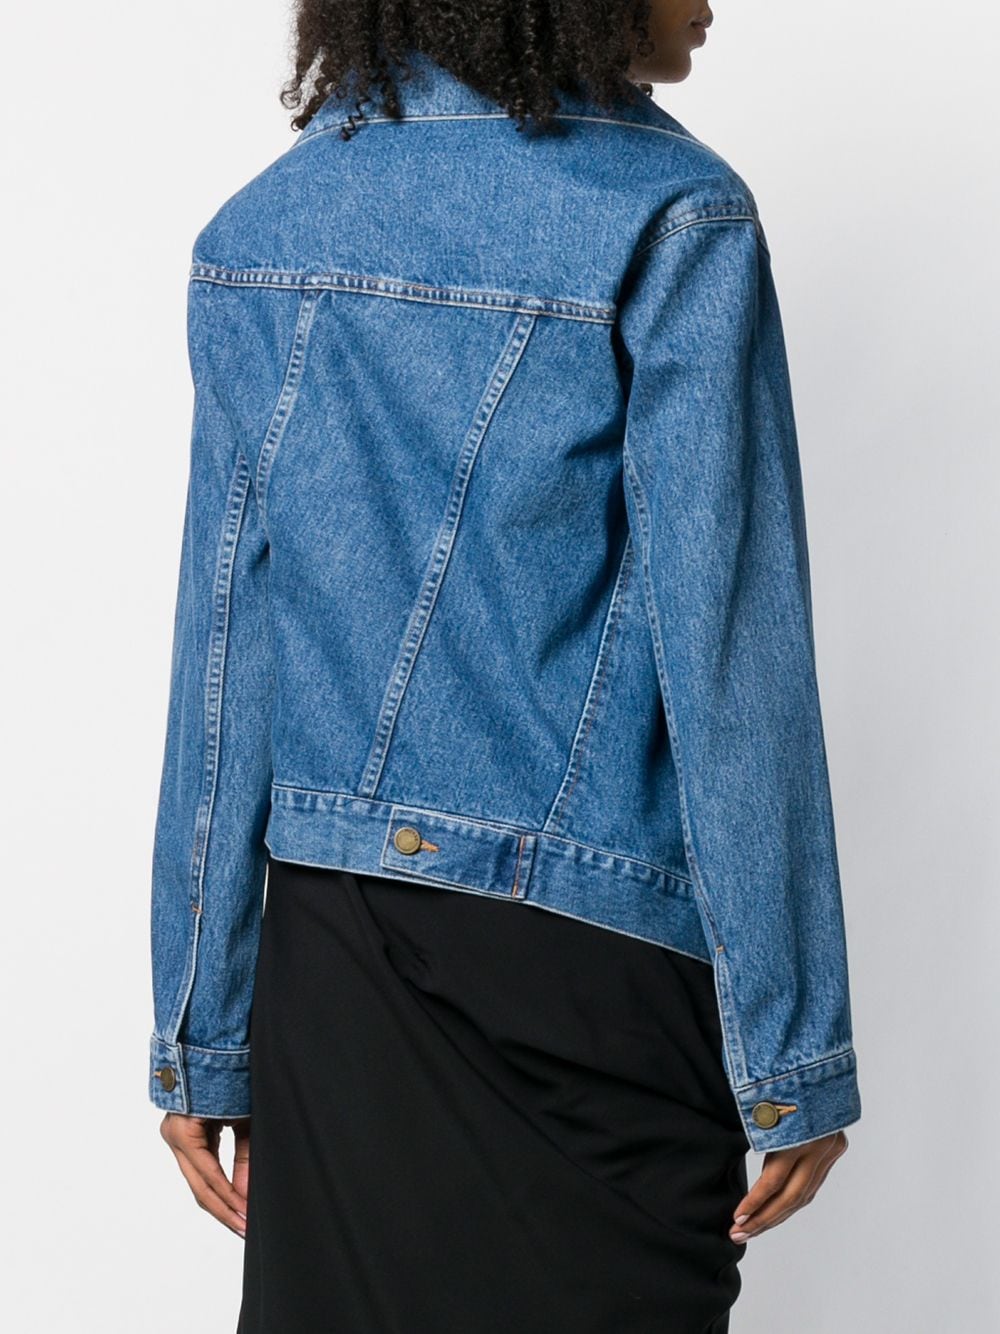 фото Monse асимметричная джинсовая куртка